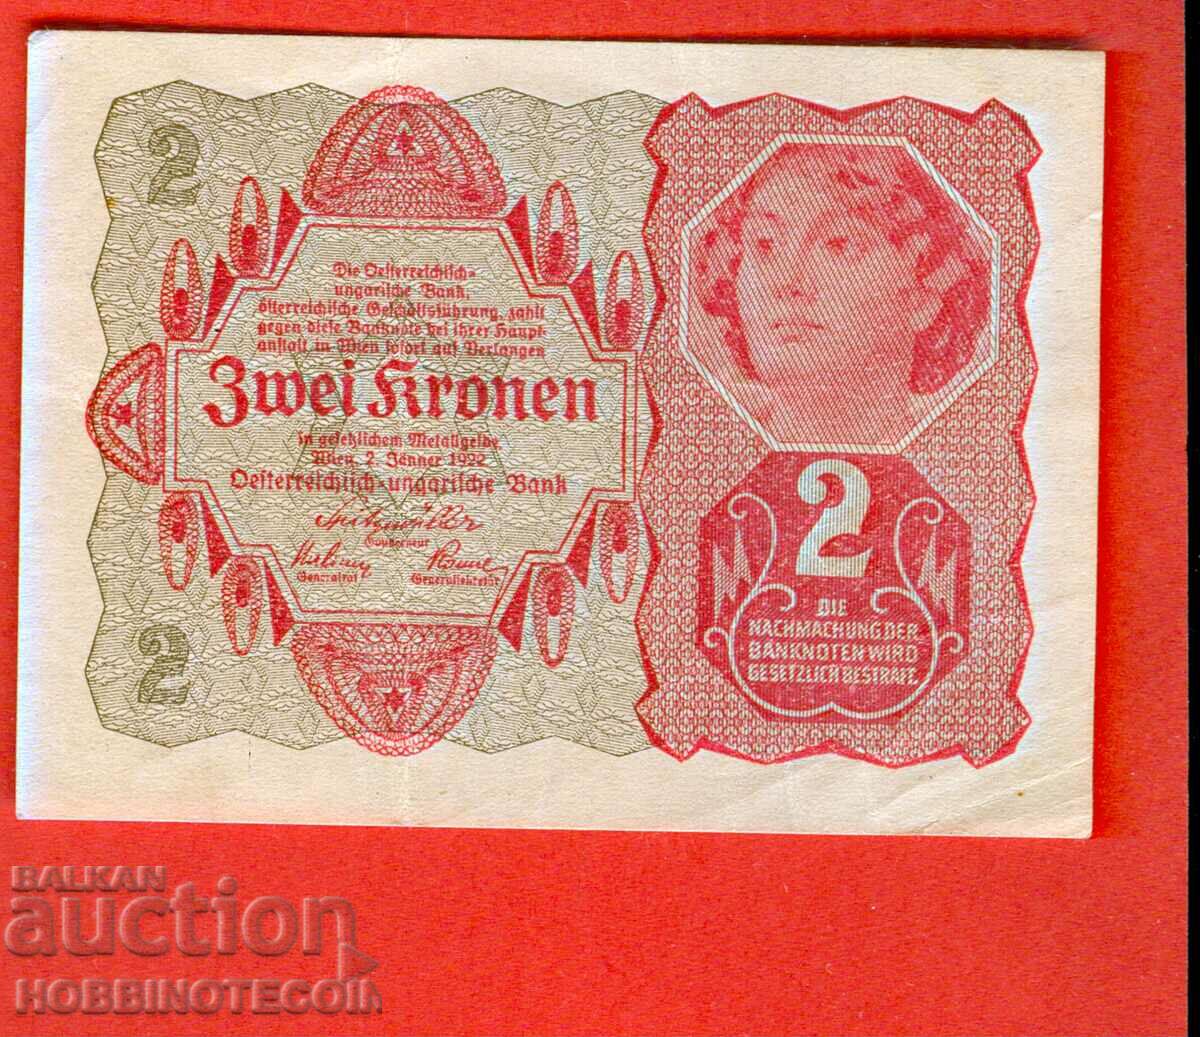 UNGARIA AUSTRIA AUSTRIA - UNGARIA - 2 - 1922 - 3